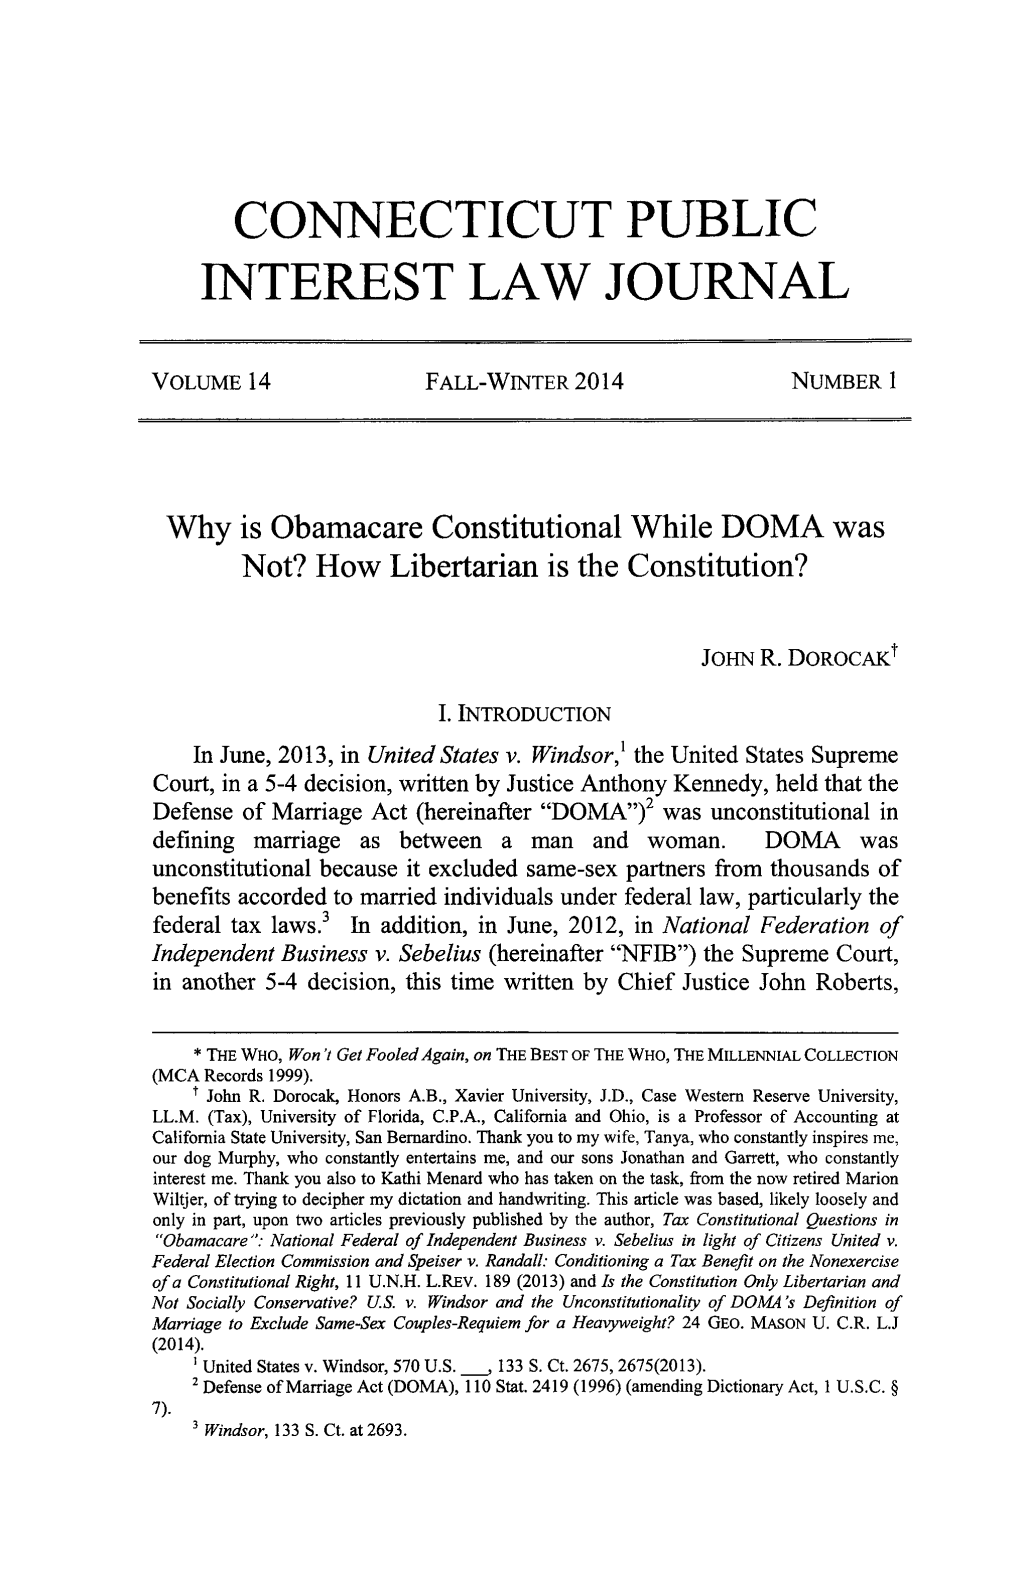 Connecticut Public Interest Law Journal